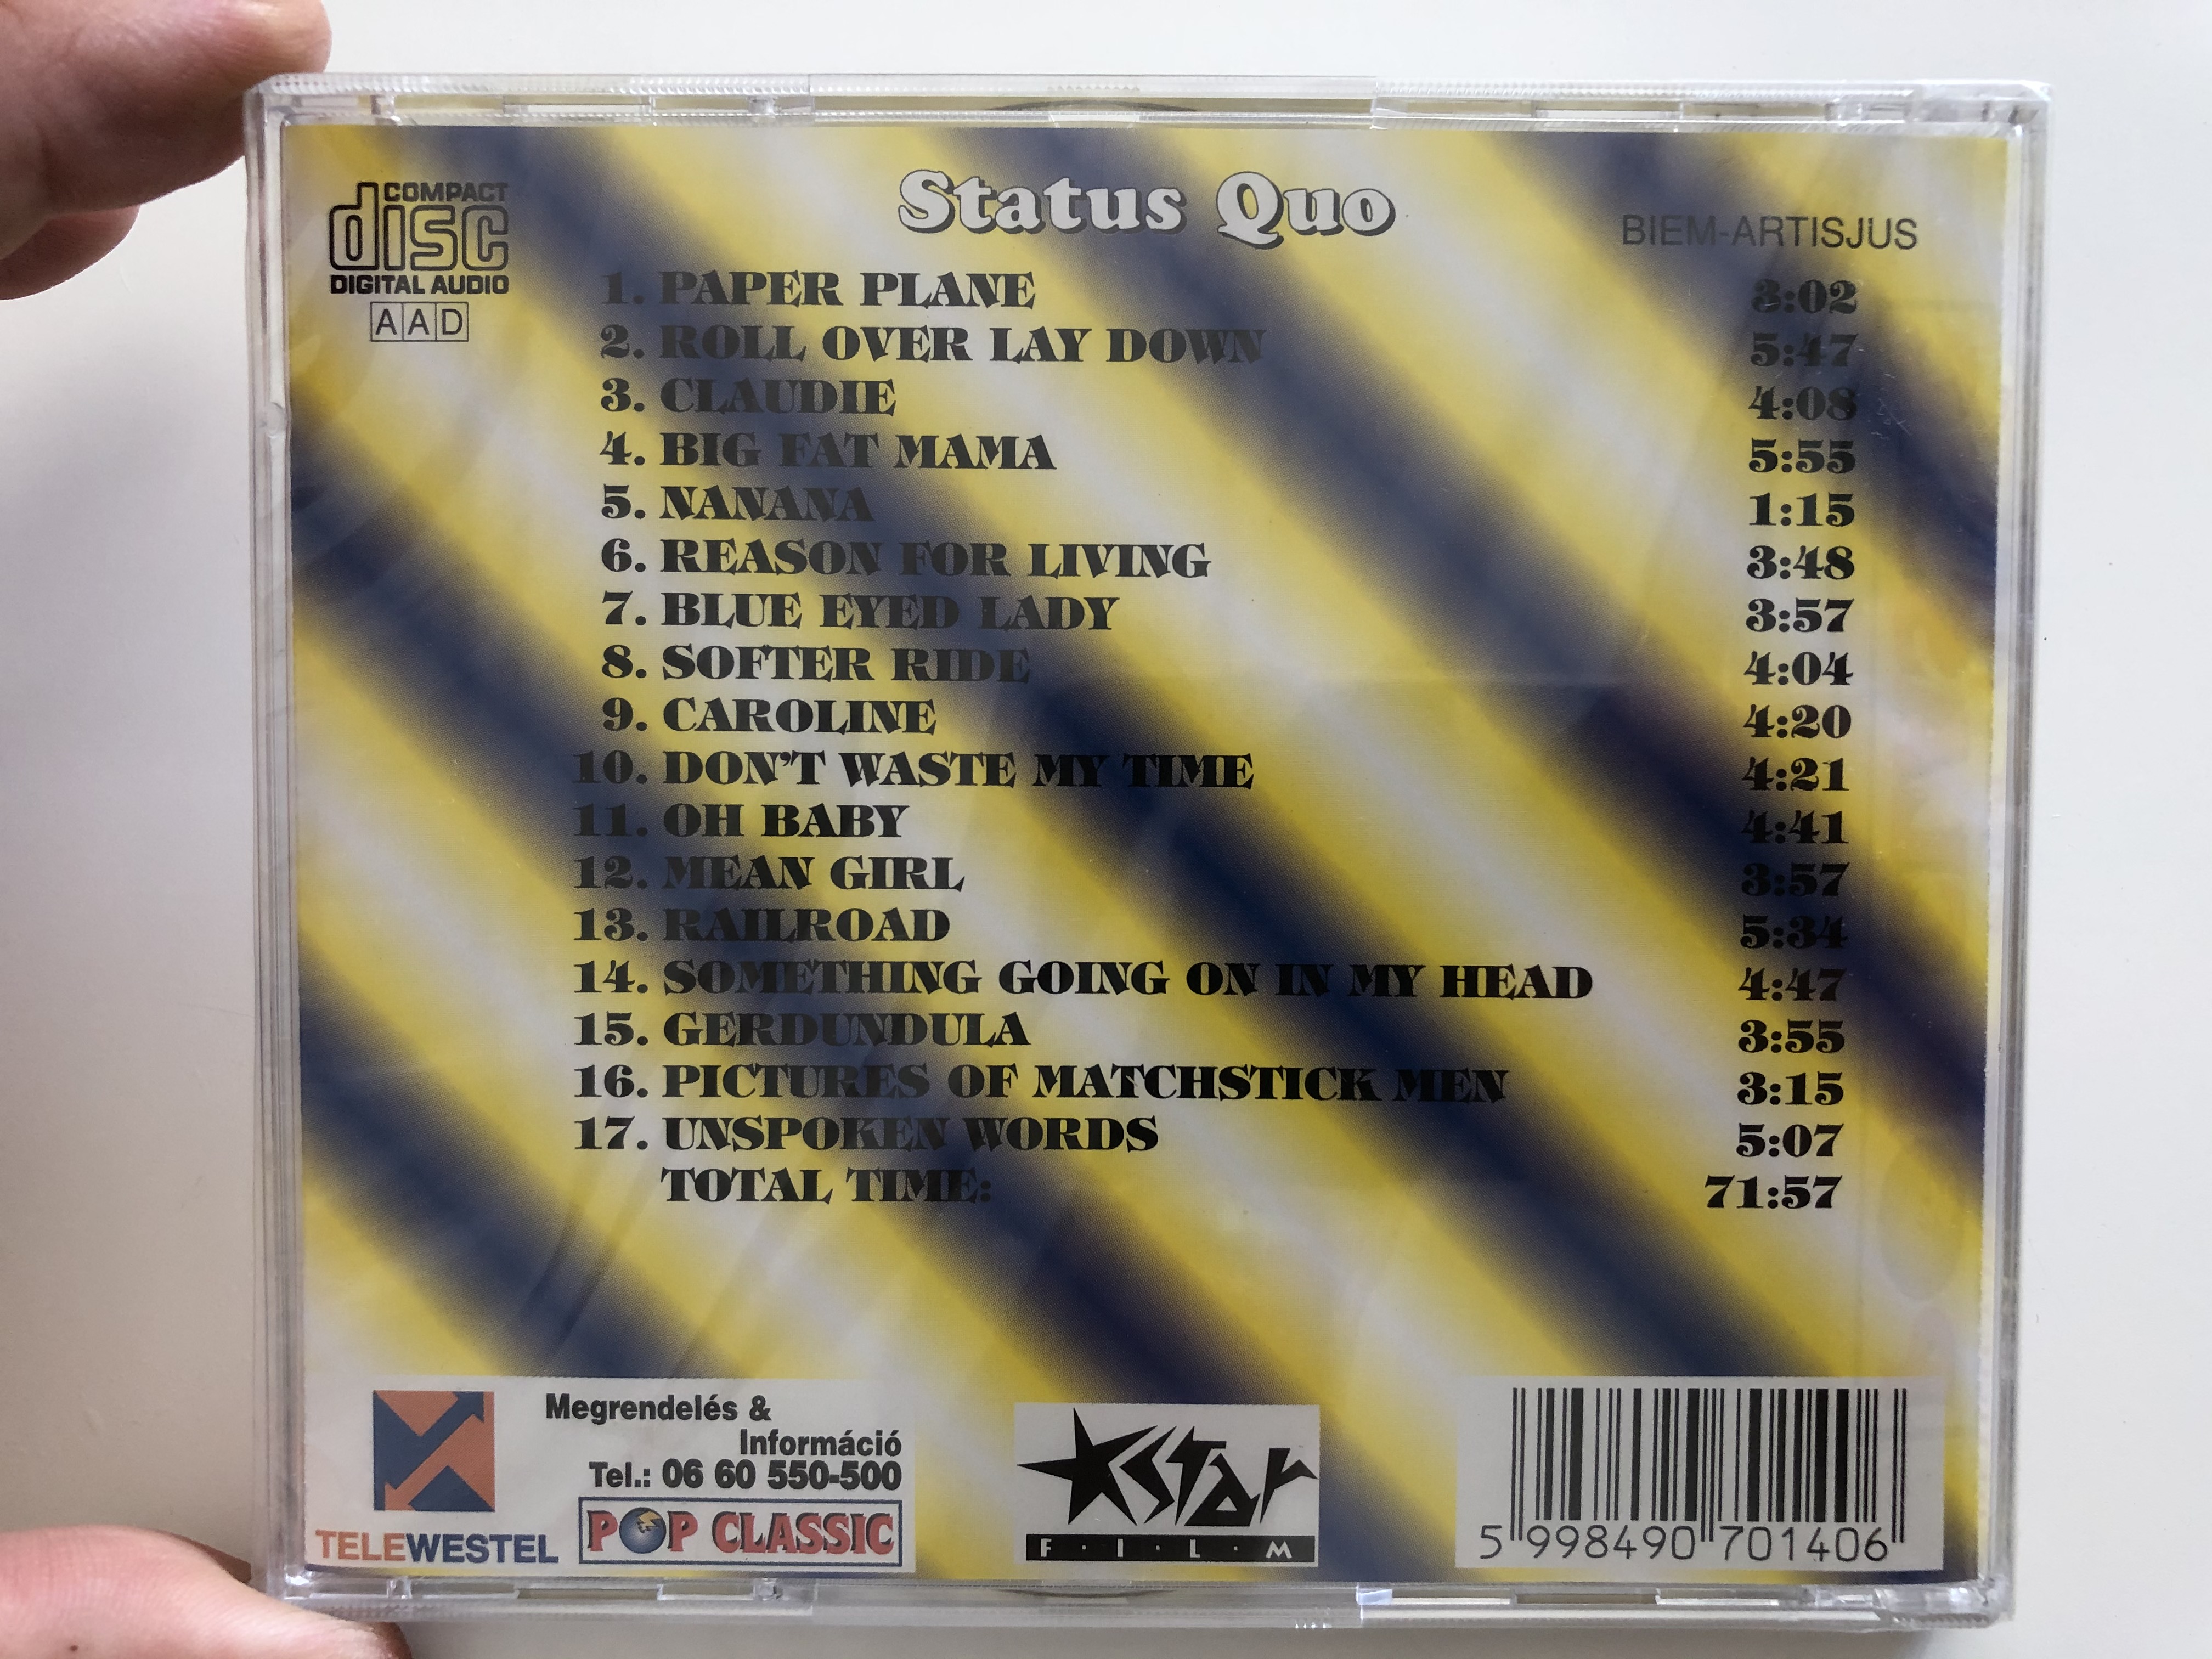 status-quo-best-of-pop-classic-euroton-audio-cd-eucd-0140-2-.jpg